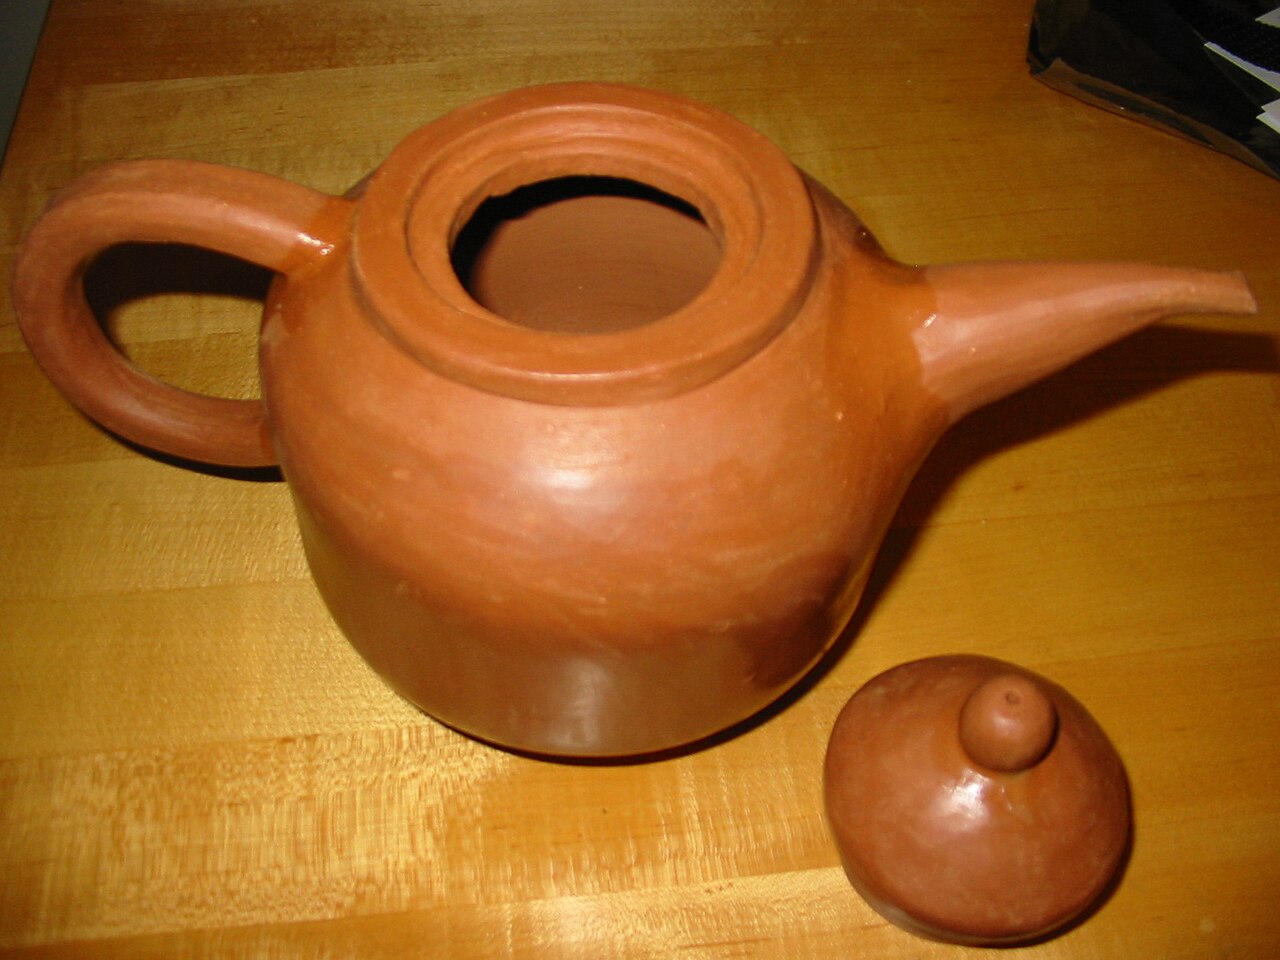 https://upload.wikimedia.org/wikipedia/commons/thumb/d/df/QN_Teapot.jpg/1280px-QN_Teapot.jpg